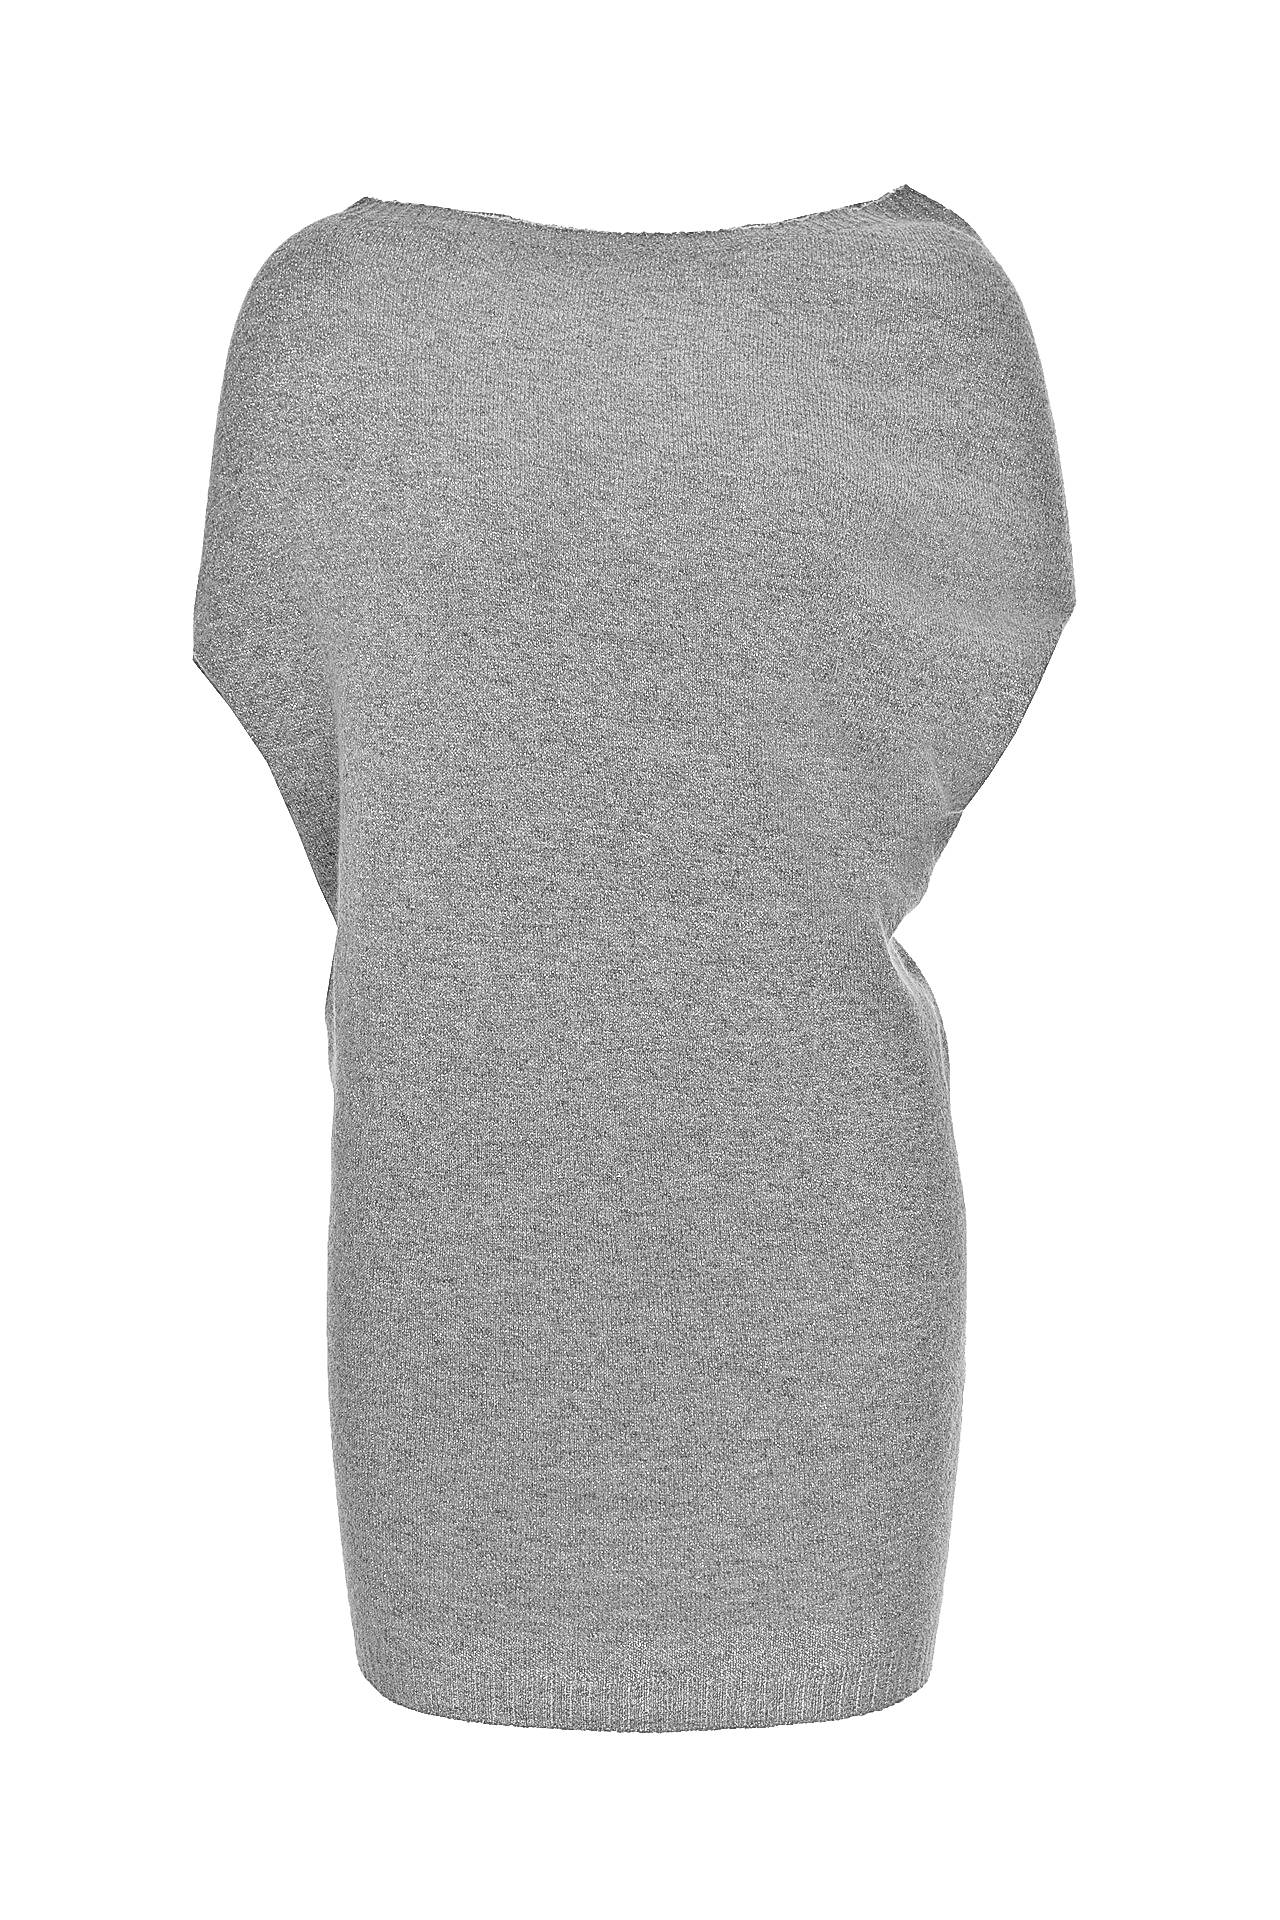 Одежда женская Туника NORTHLAND (2034D/12.2). Купить за 2150 руб.